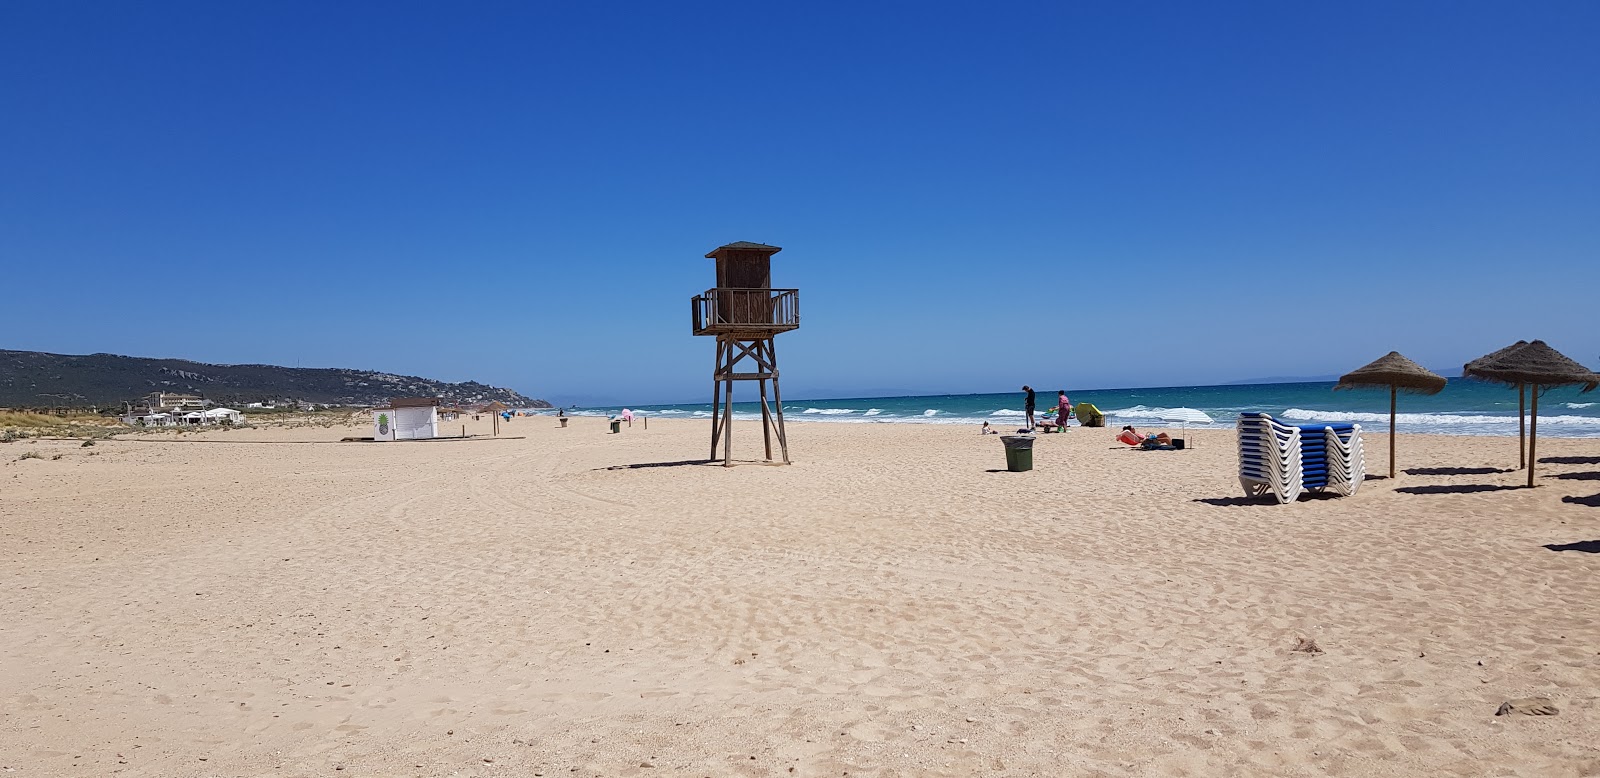 Playa de Zahara'in fotoğrafı parlak ince kum yüzey ile